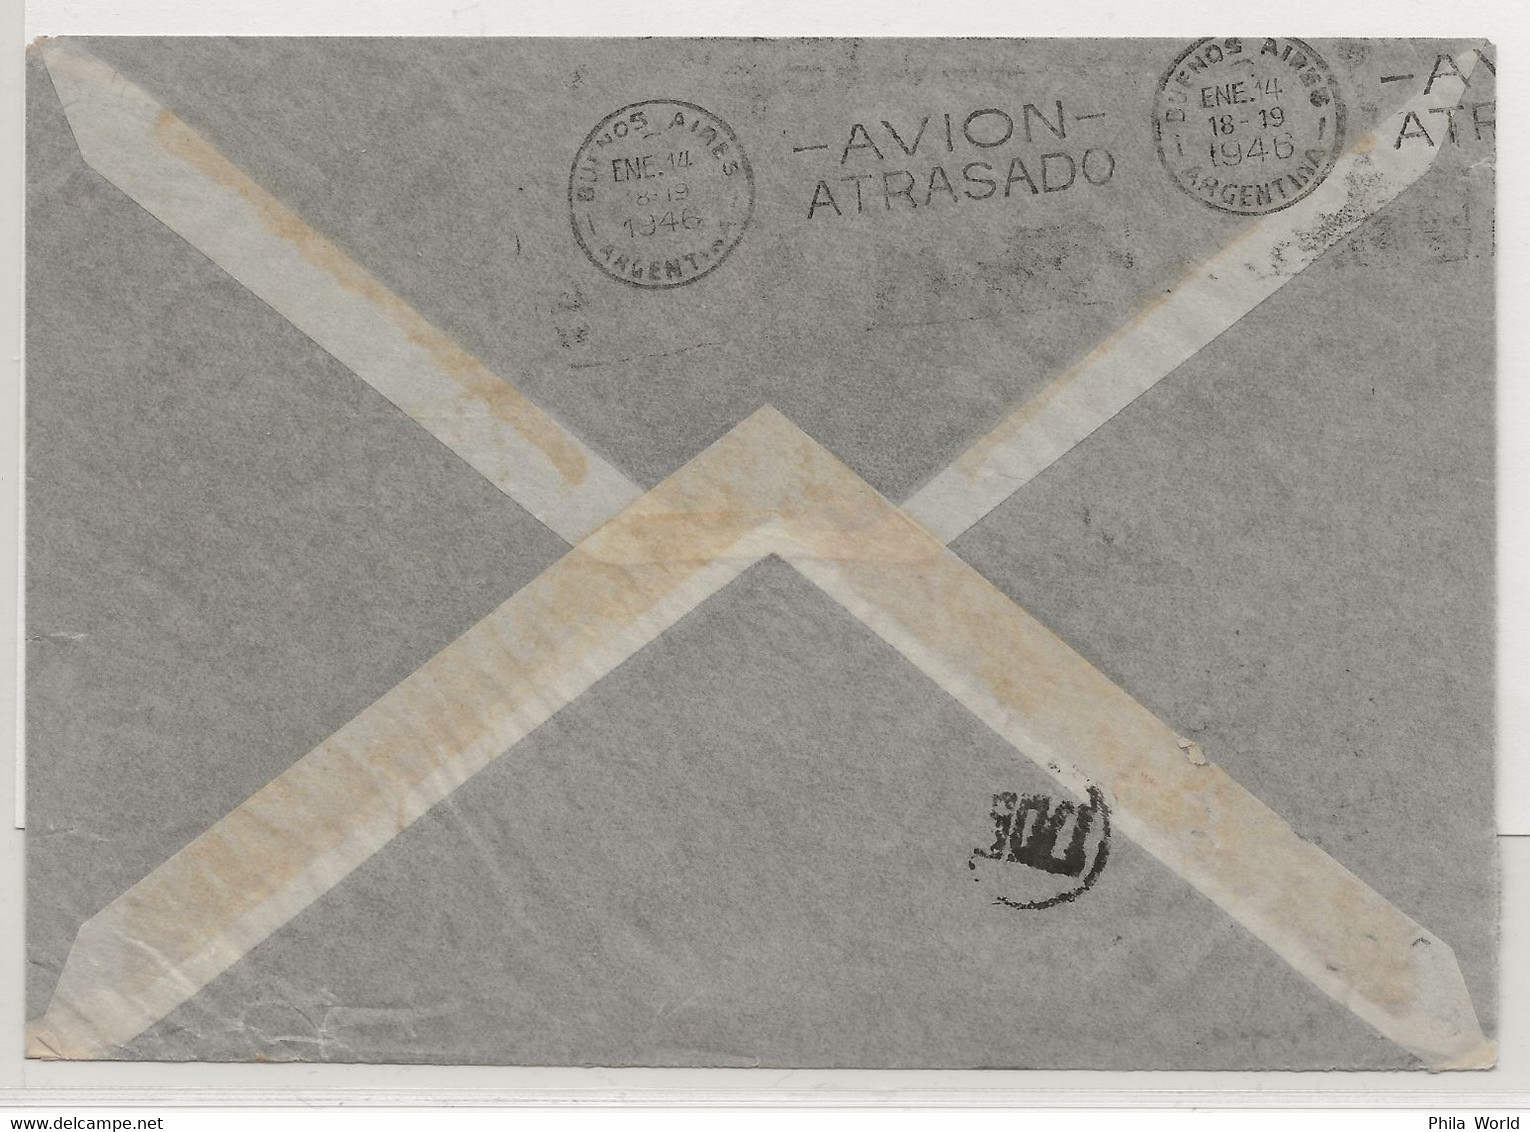 VOL AVION ACCIDENTE - 1946 SUEDE - ARGENTINE Avec Cachet AVION ATRASADO Départ GOTEBORG Air Mail Crash Cover - Lettres & Documents